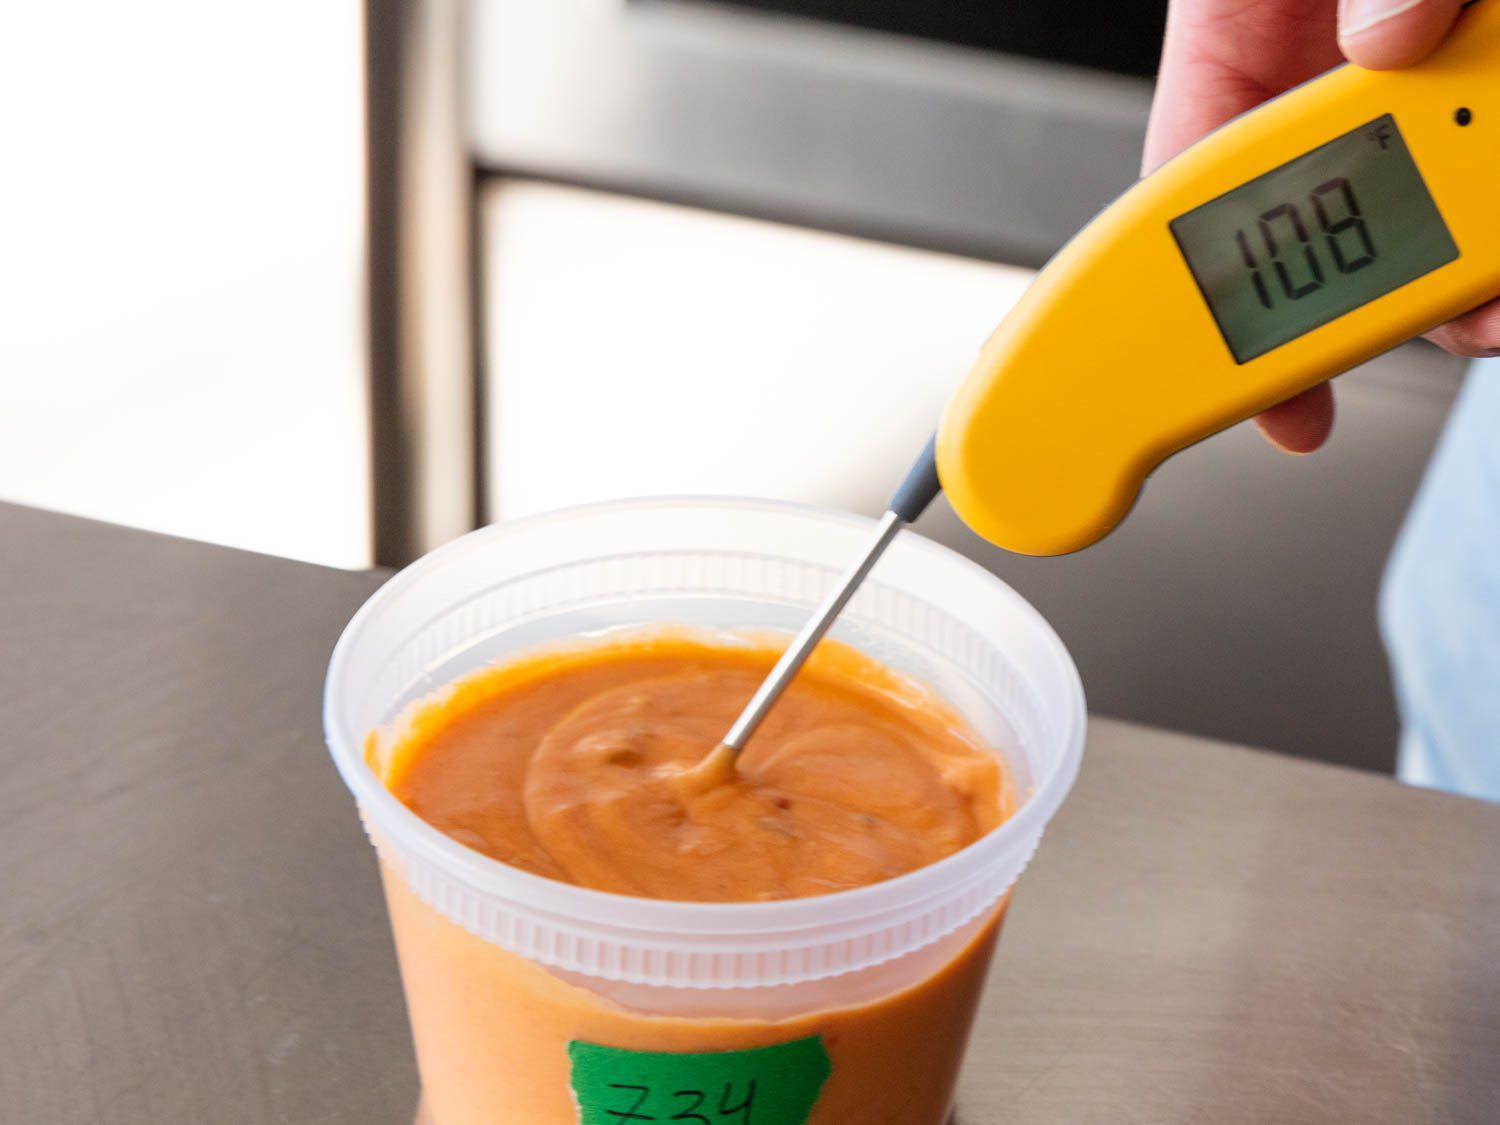 用温度计测量塑料容器里的奶酪酱的温度。